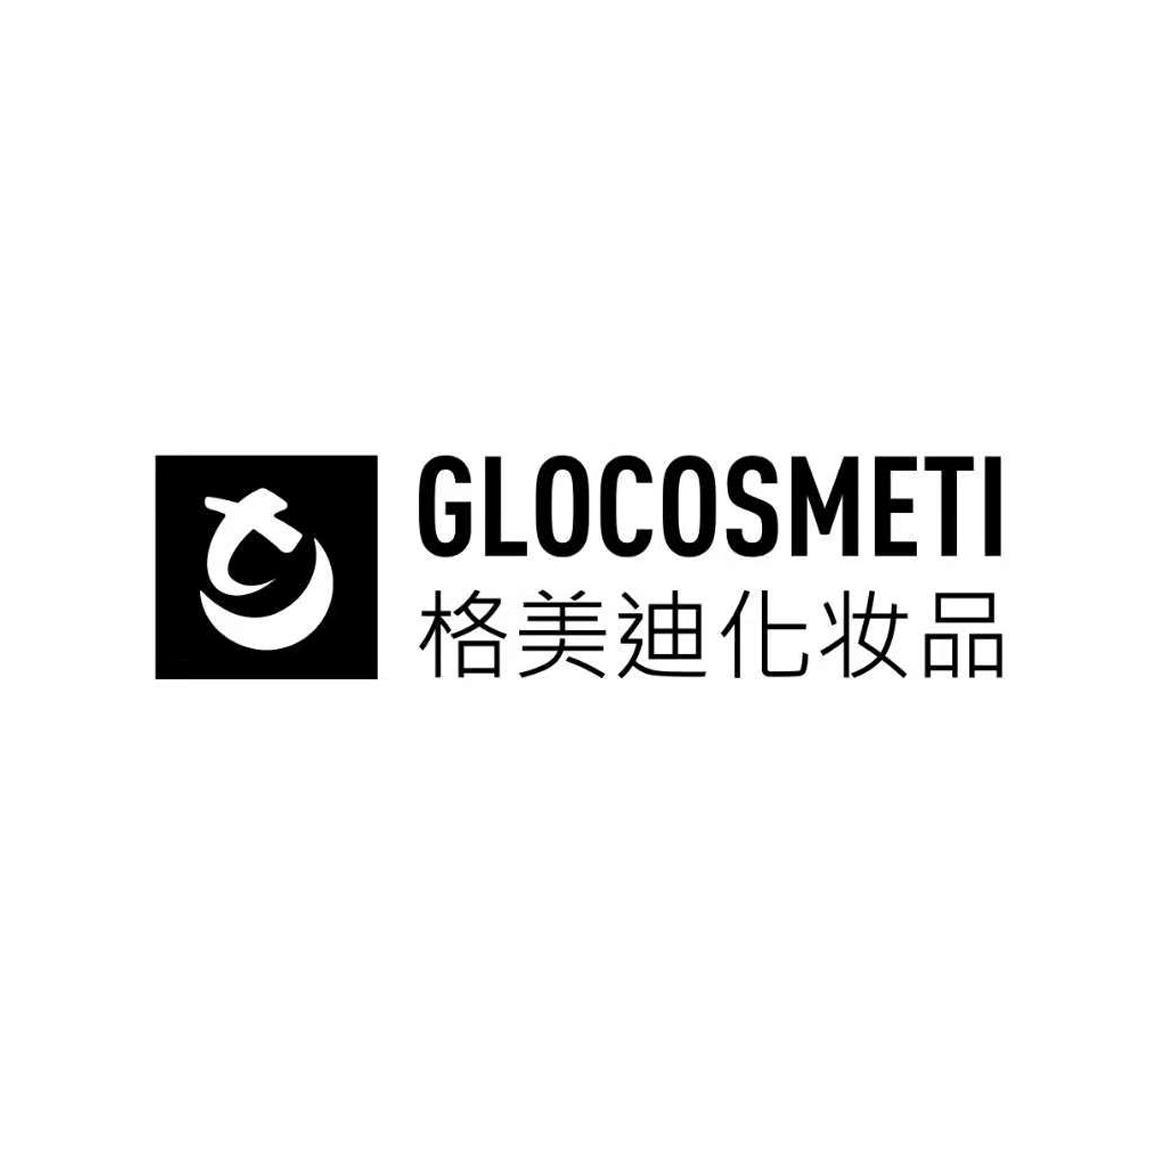 格美迪化妆品 glocosmeti 商标公告